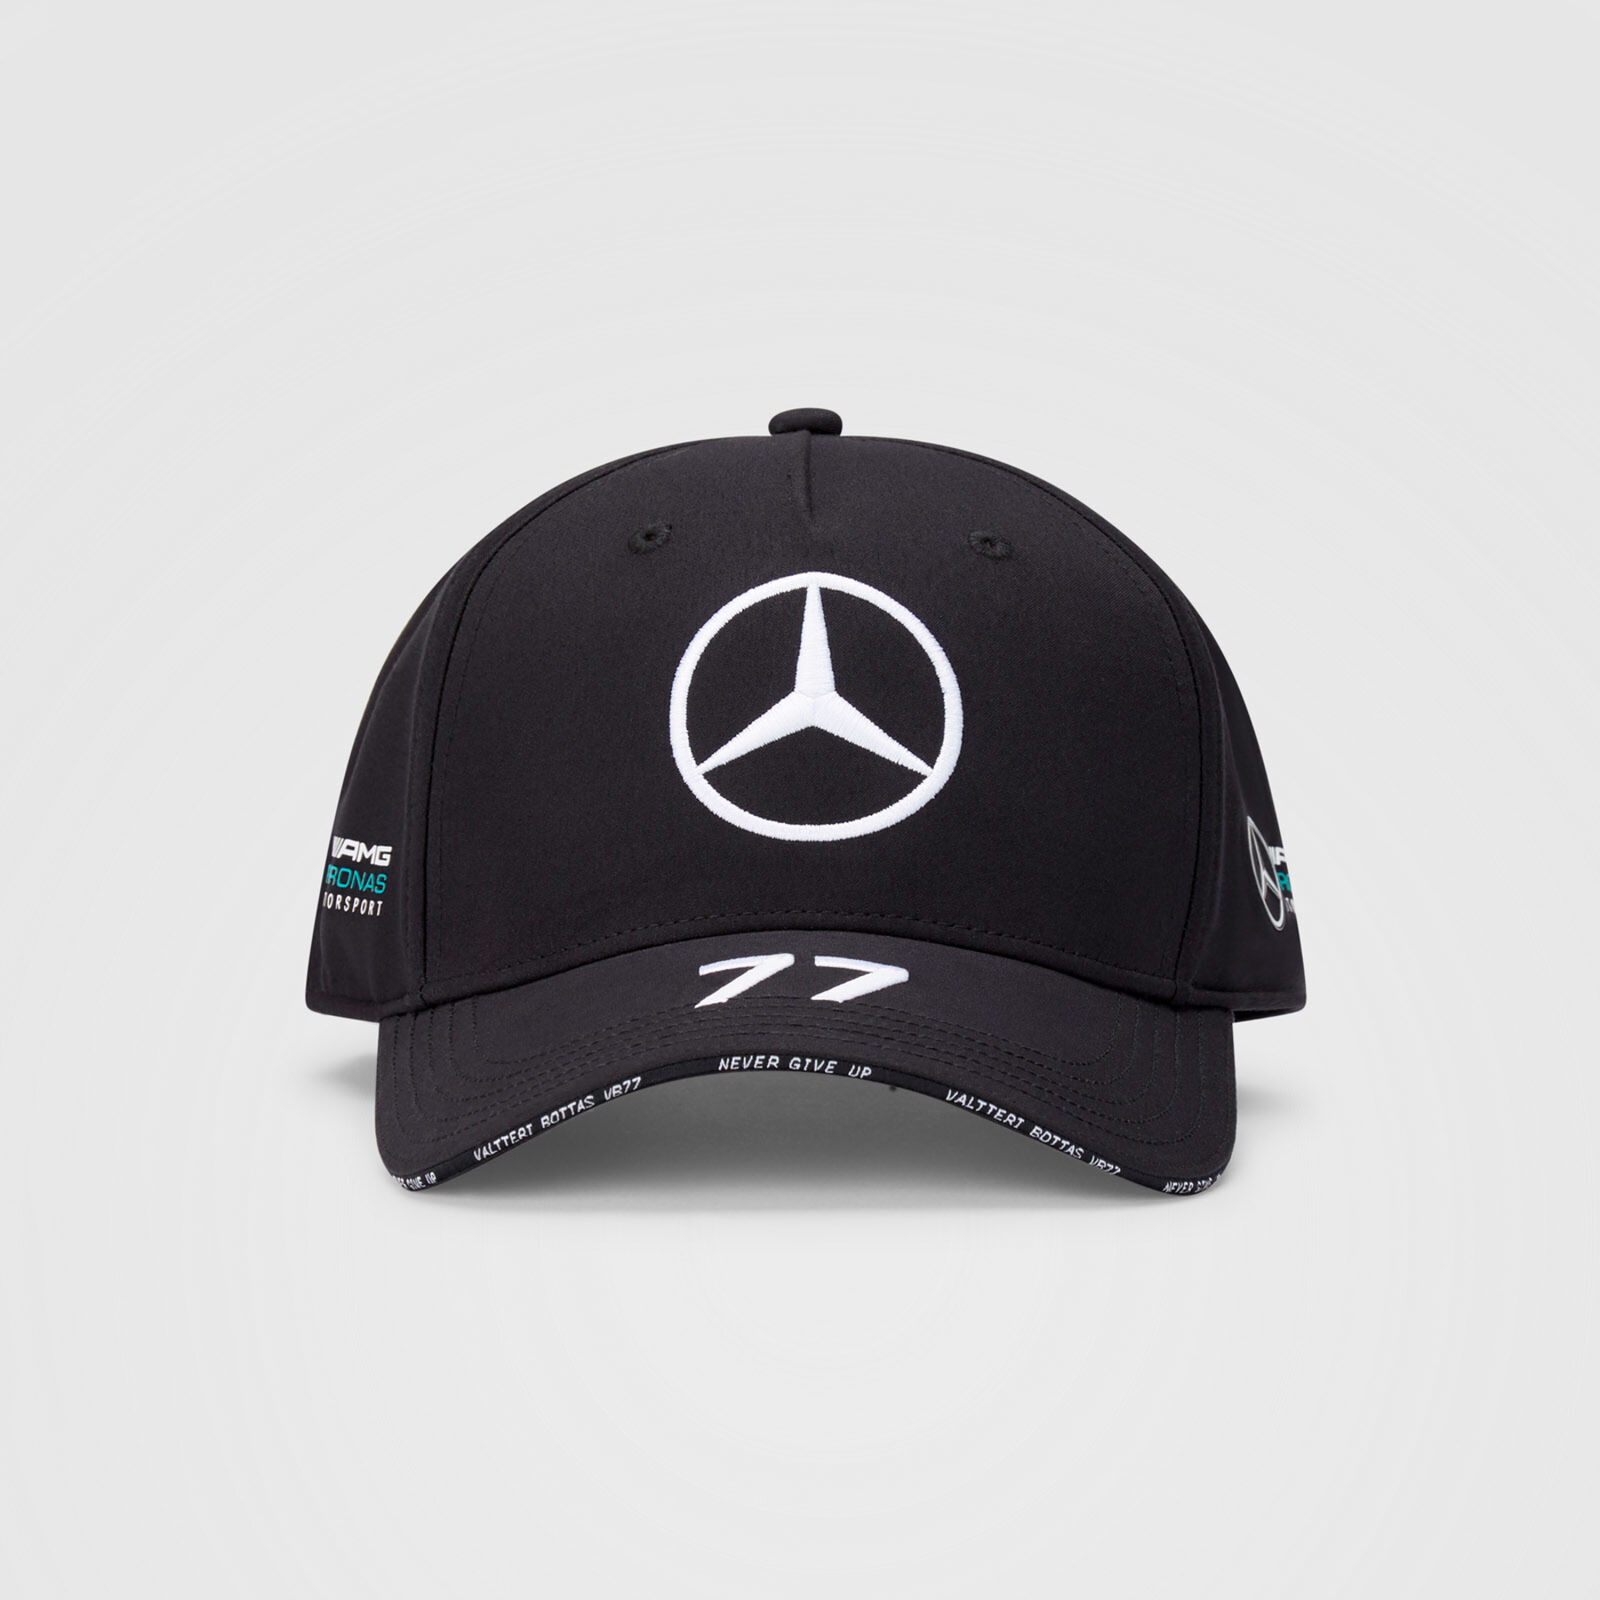 Casquette noir Mercedes AMG Petronas Valtteri Bottas numéro 77 vue face